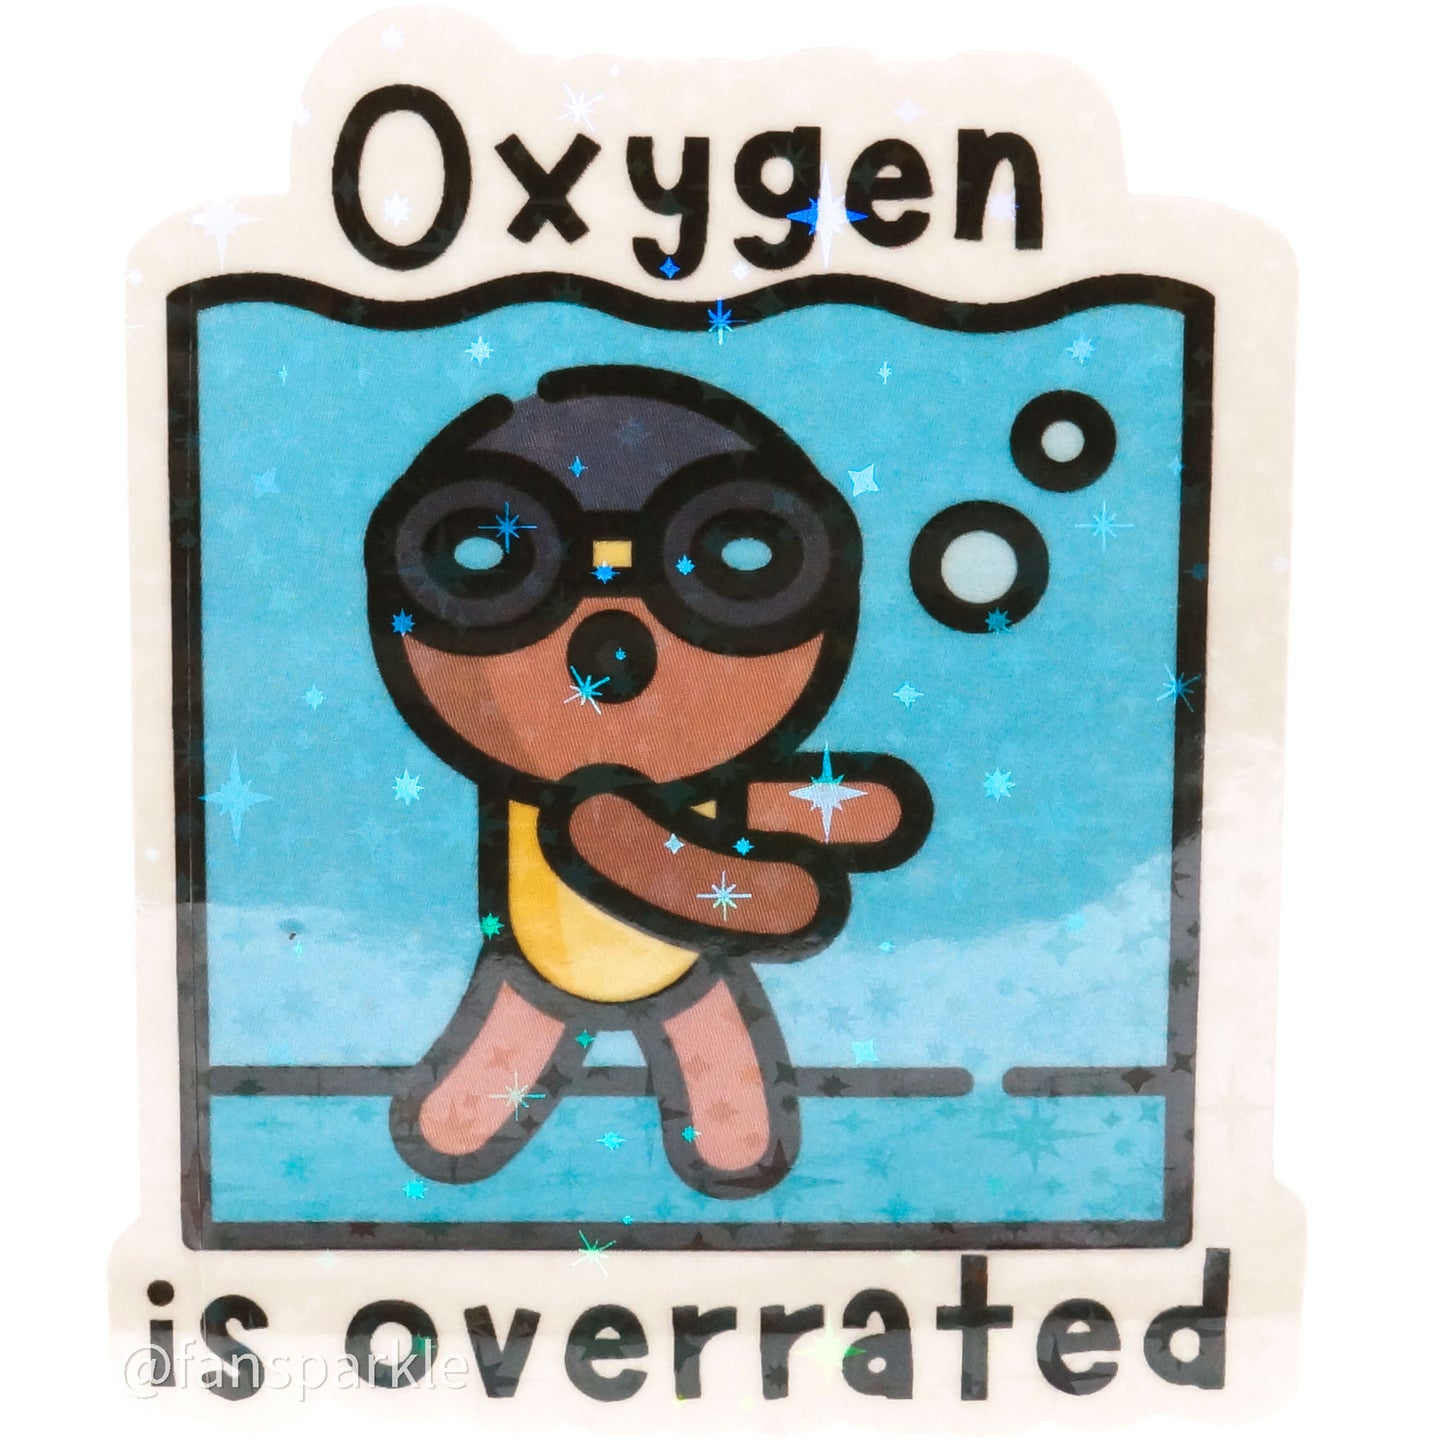 Oxygen is Overrated Sticker - Fan Sparkle